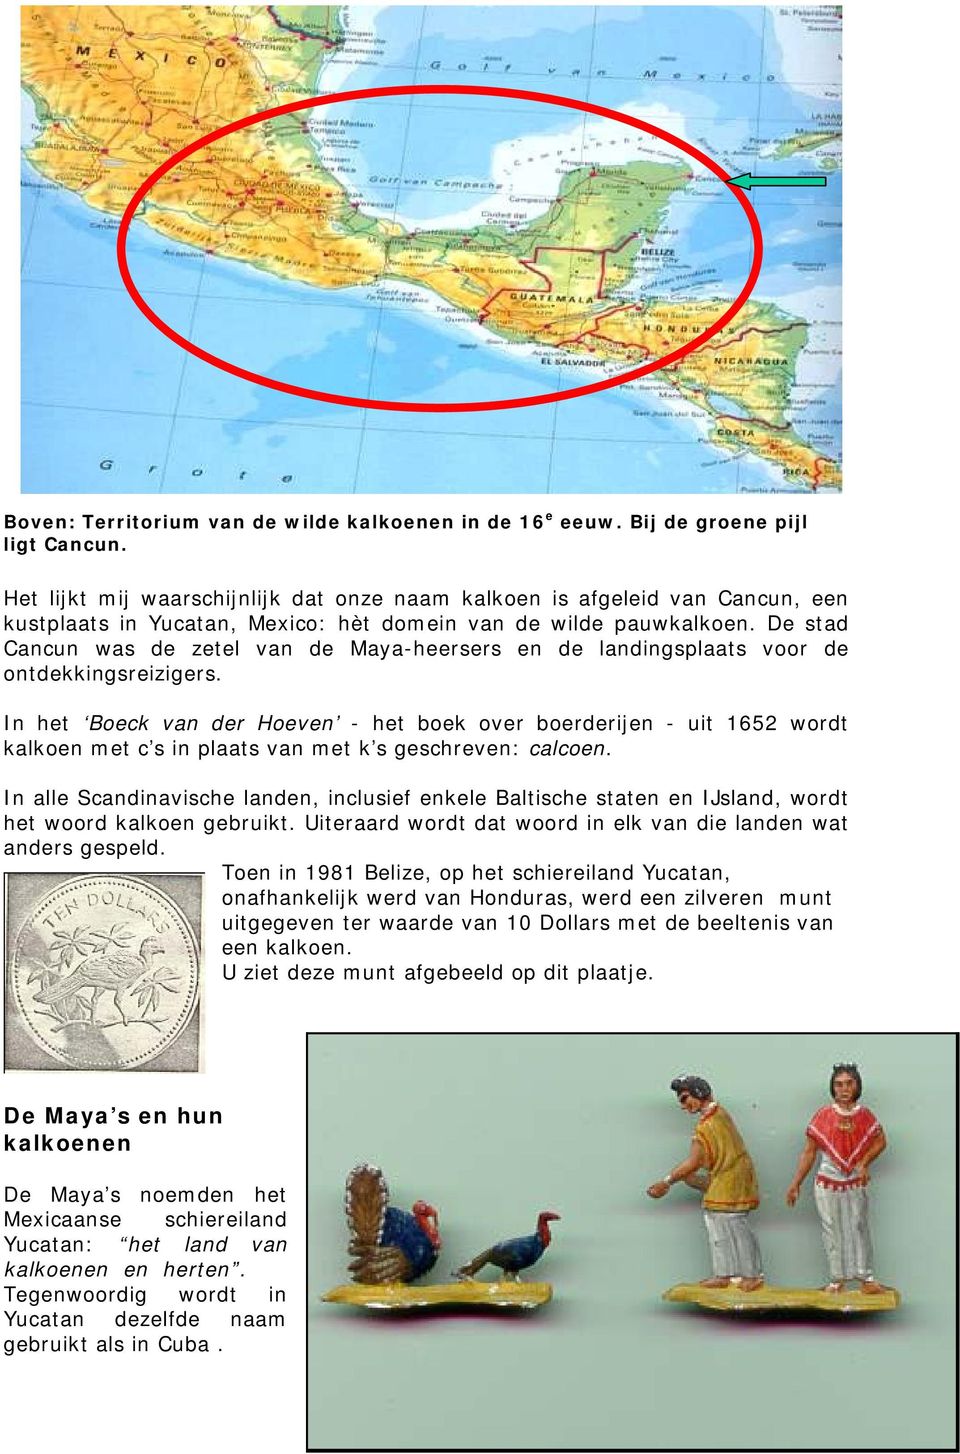 De stad Cancun was de zetel van de Maya-heersers en de landingsplaats voor de ontdekkingsreizigers.